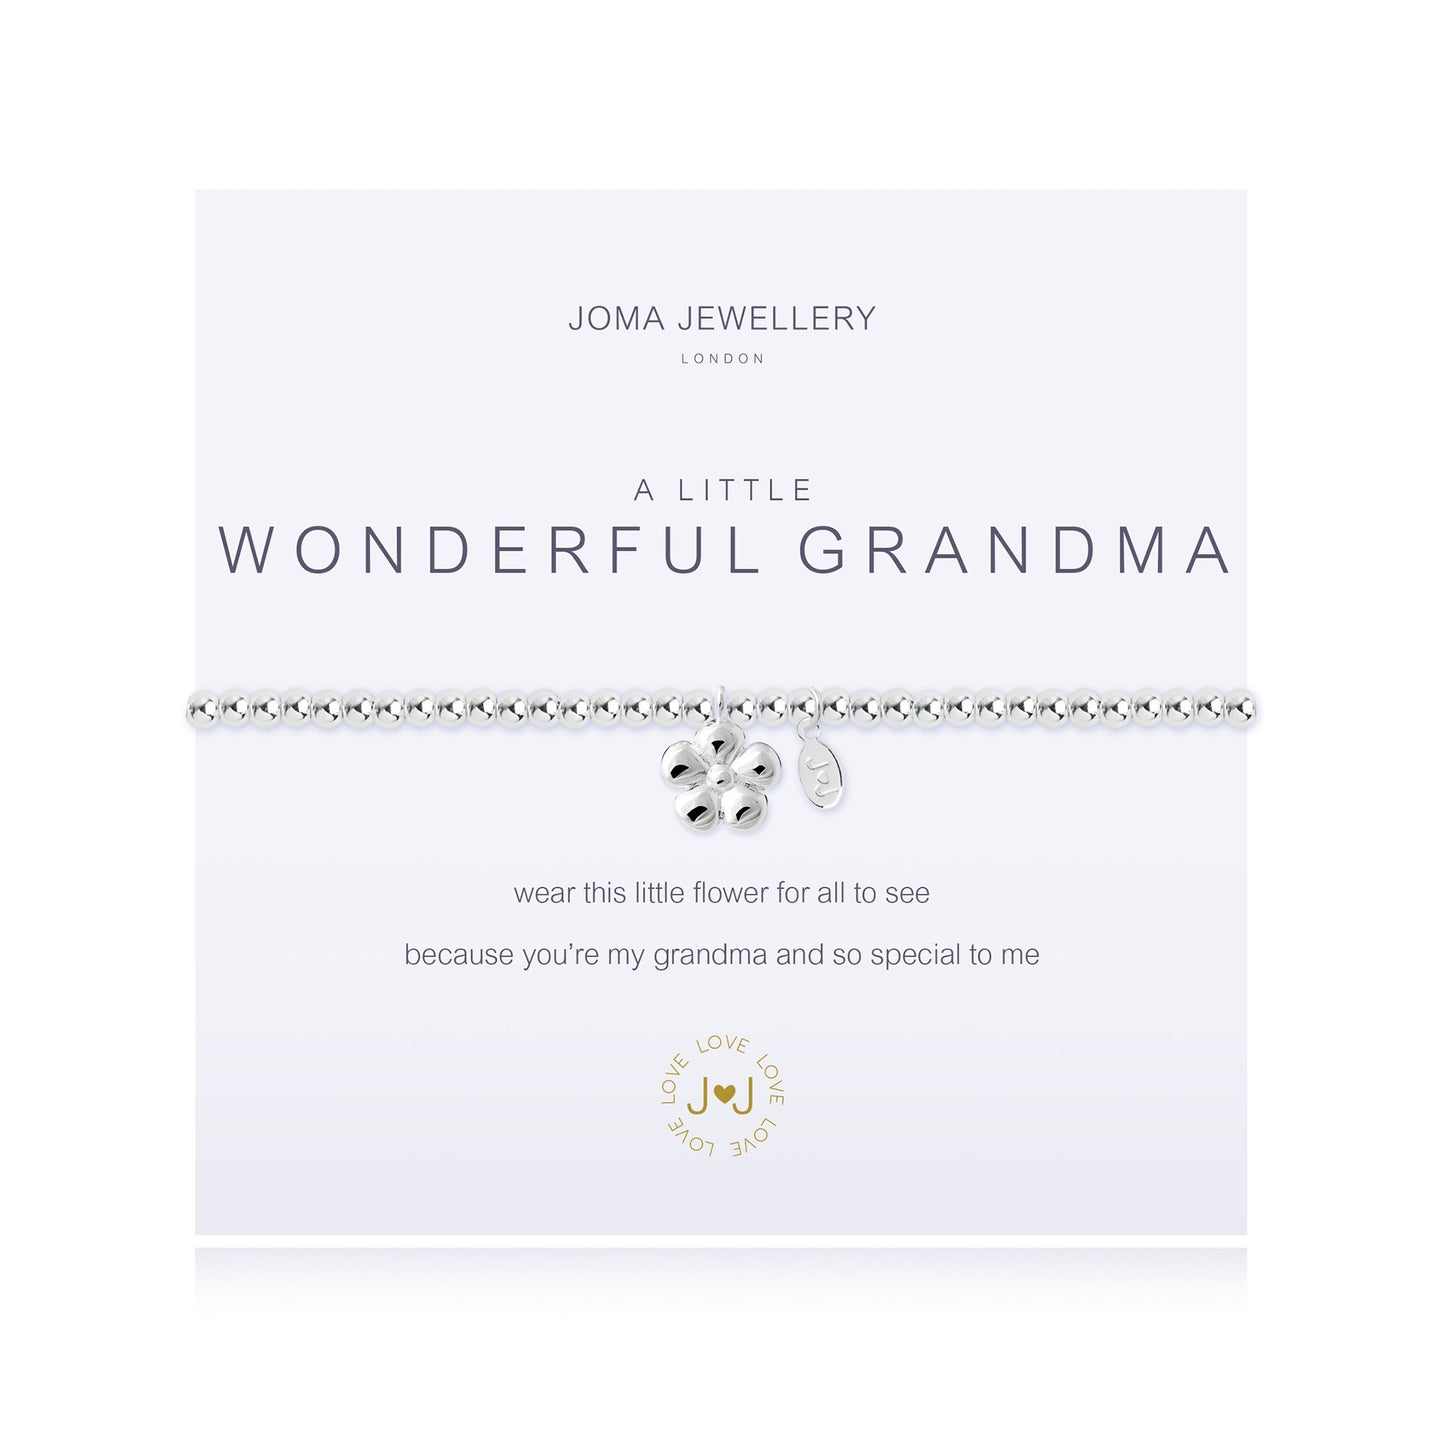 Joma Bracelet 1665 - Wonderful Grandma